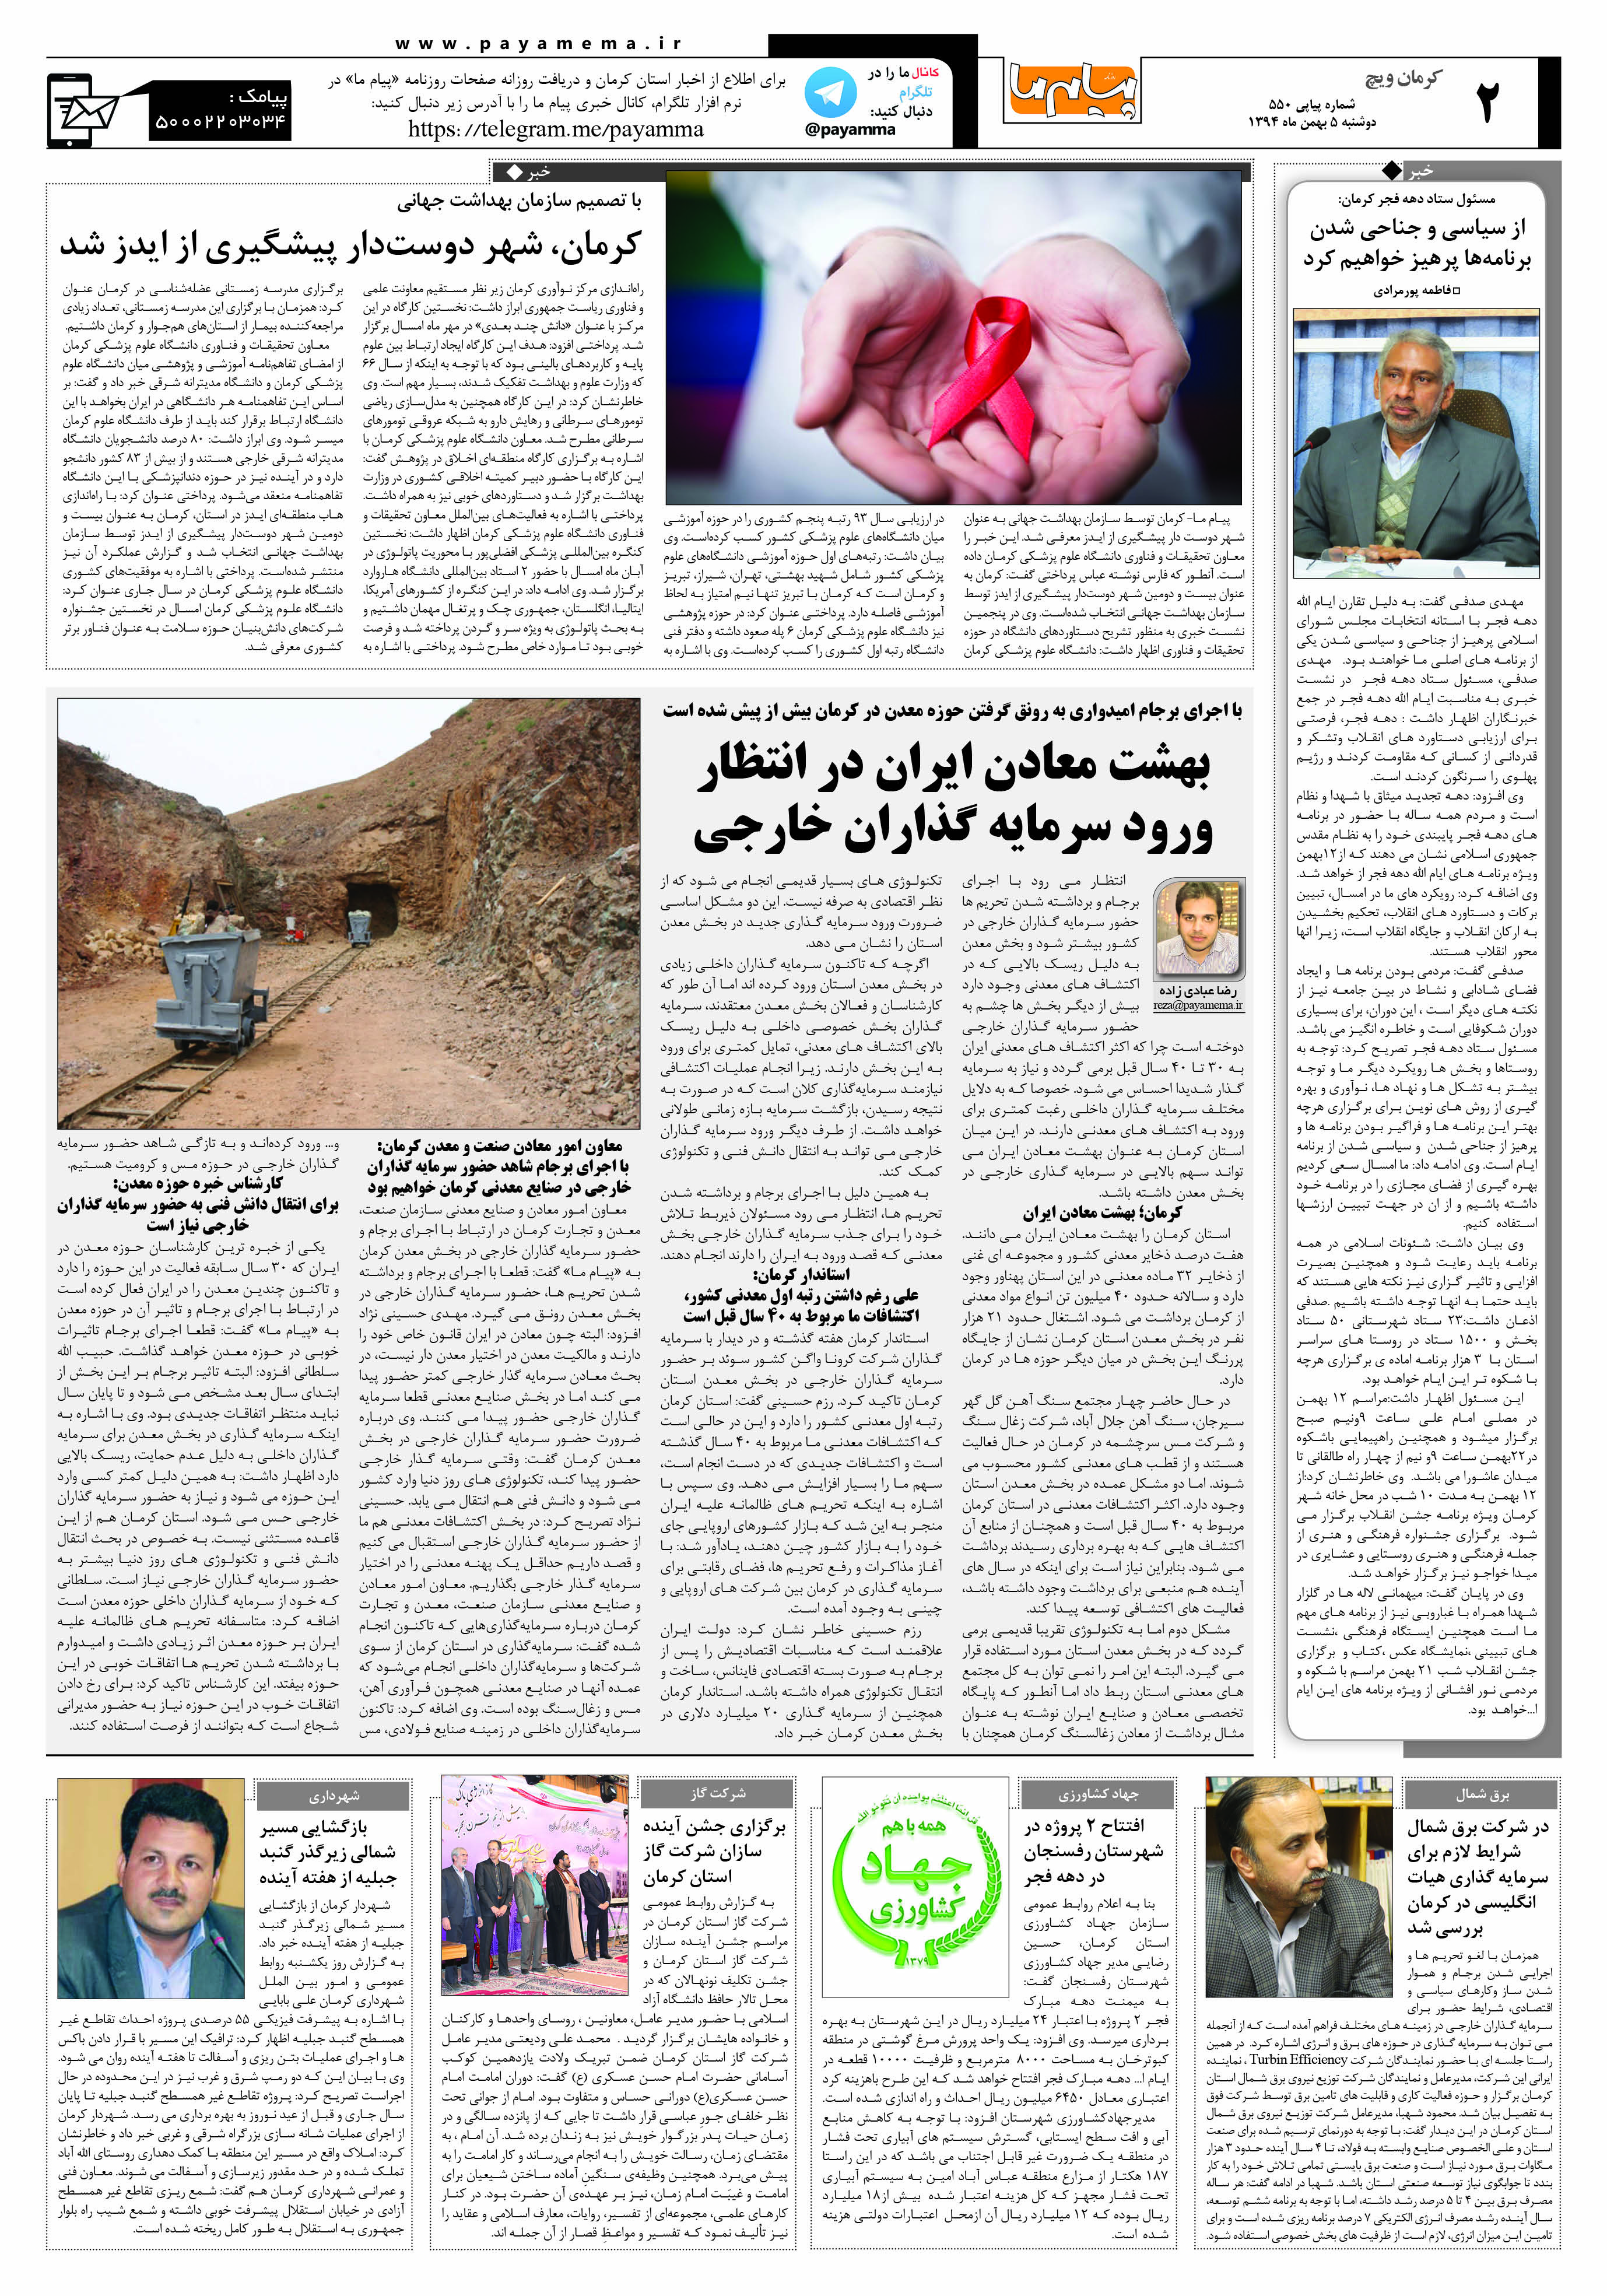 صفحه کرمان ویج شماره 550 روزنامه پیام ما